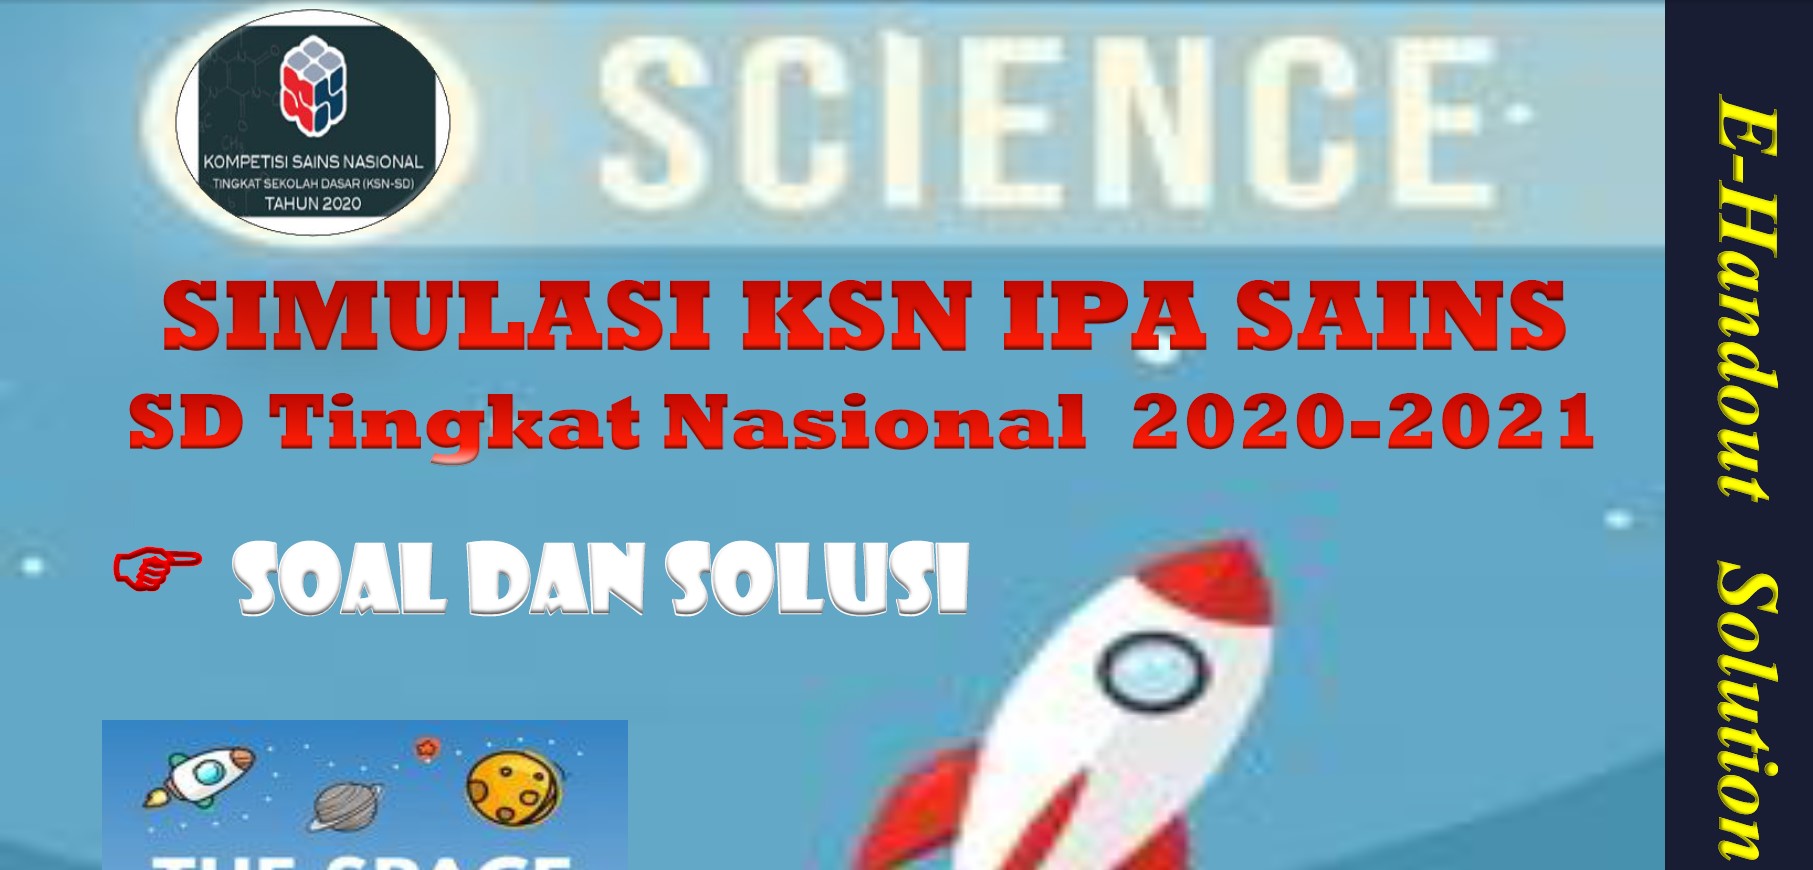 Download Soal dan Solusi Simulasi KSN IPA SAINS SD Tingkat Nasional 2020-2021